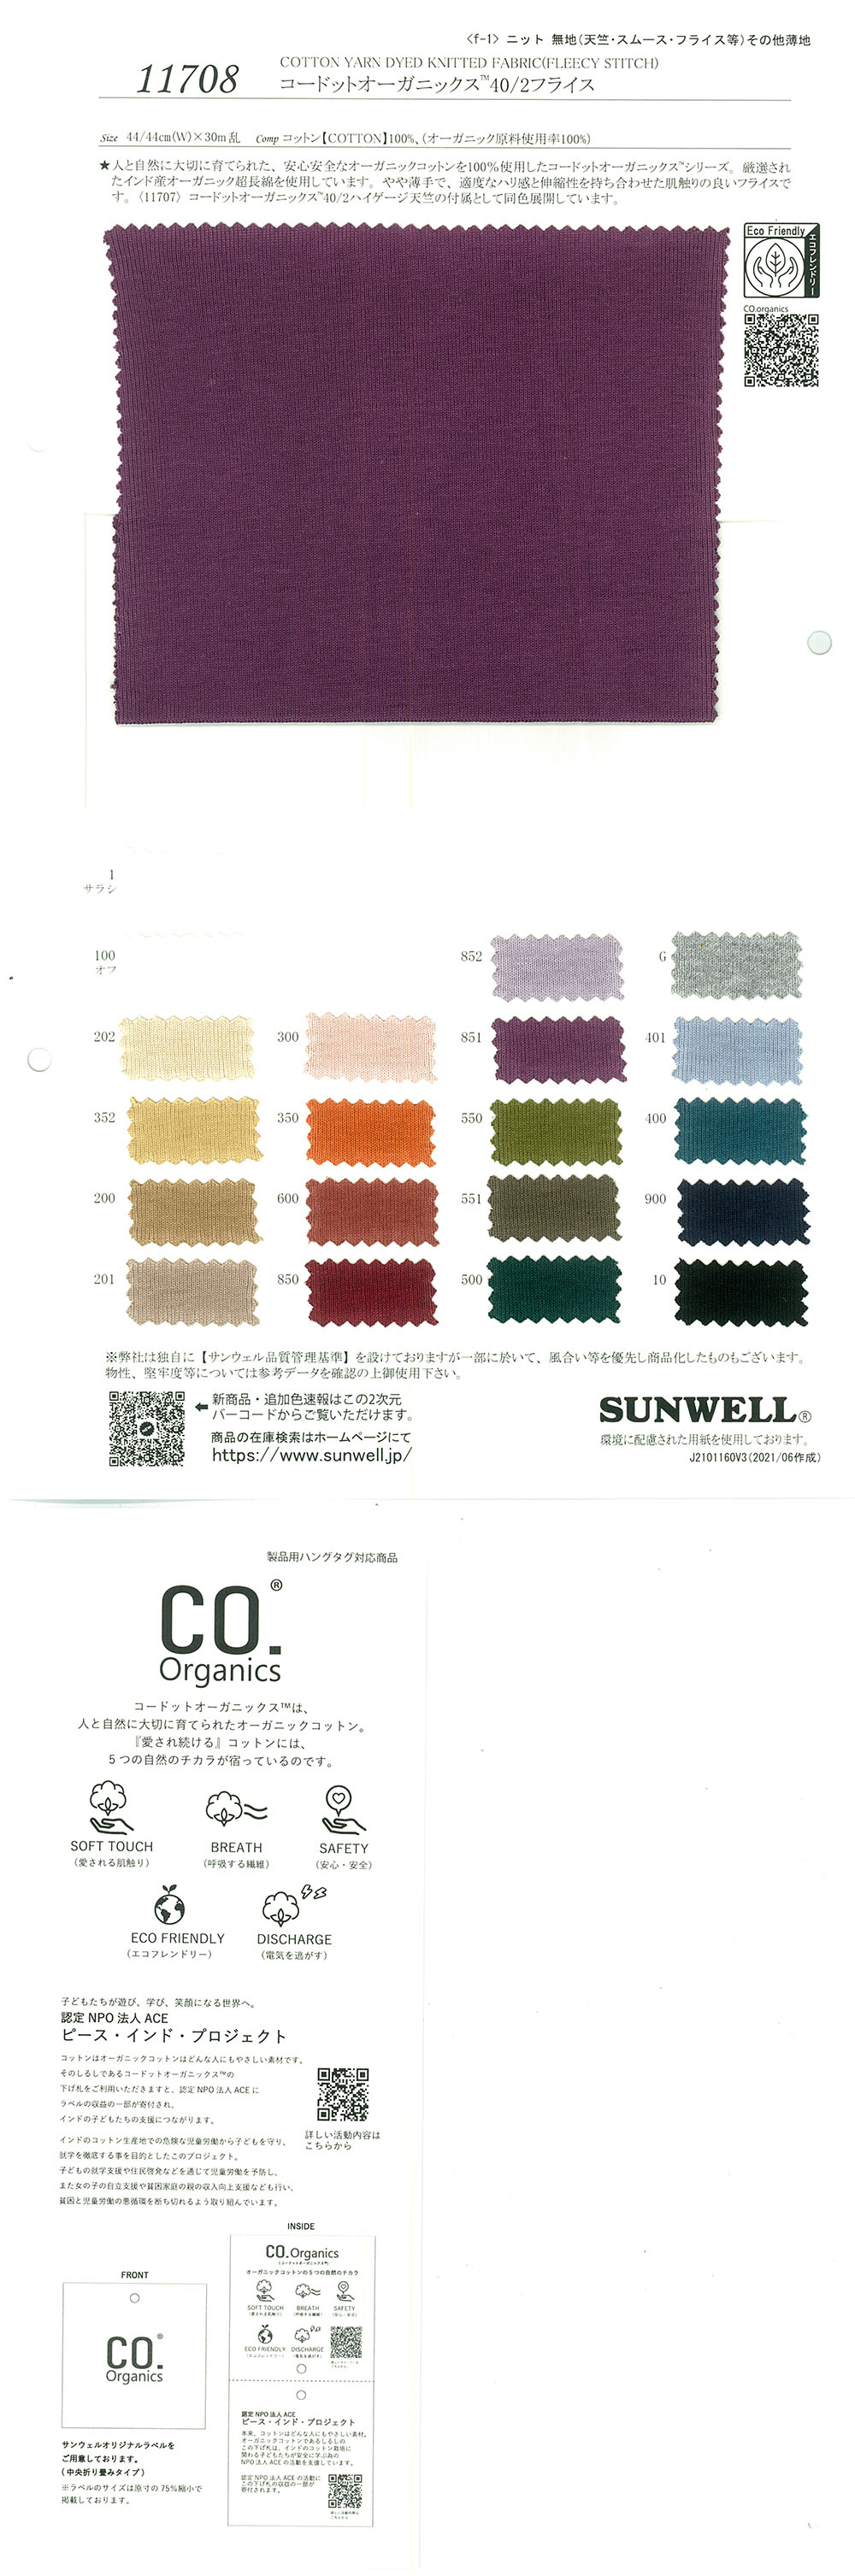 11708 Cortador De Costillas Circular Cordot Organics (R) 40/2[Fabrica Textil] SUNWELL